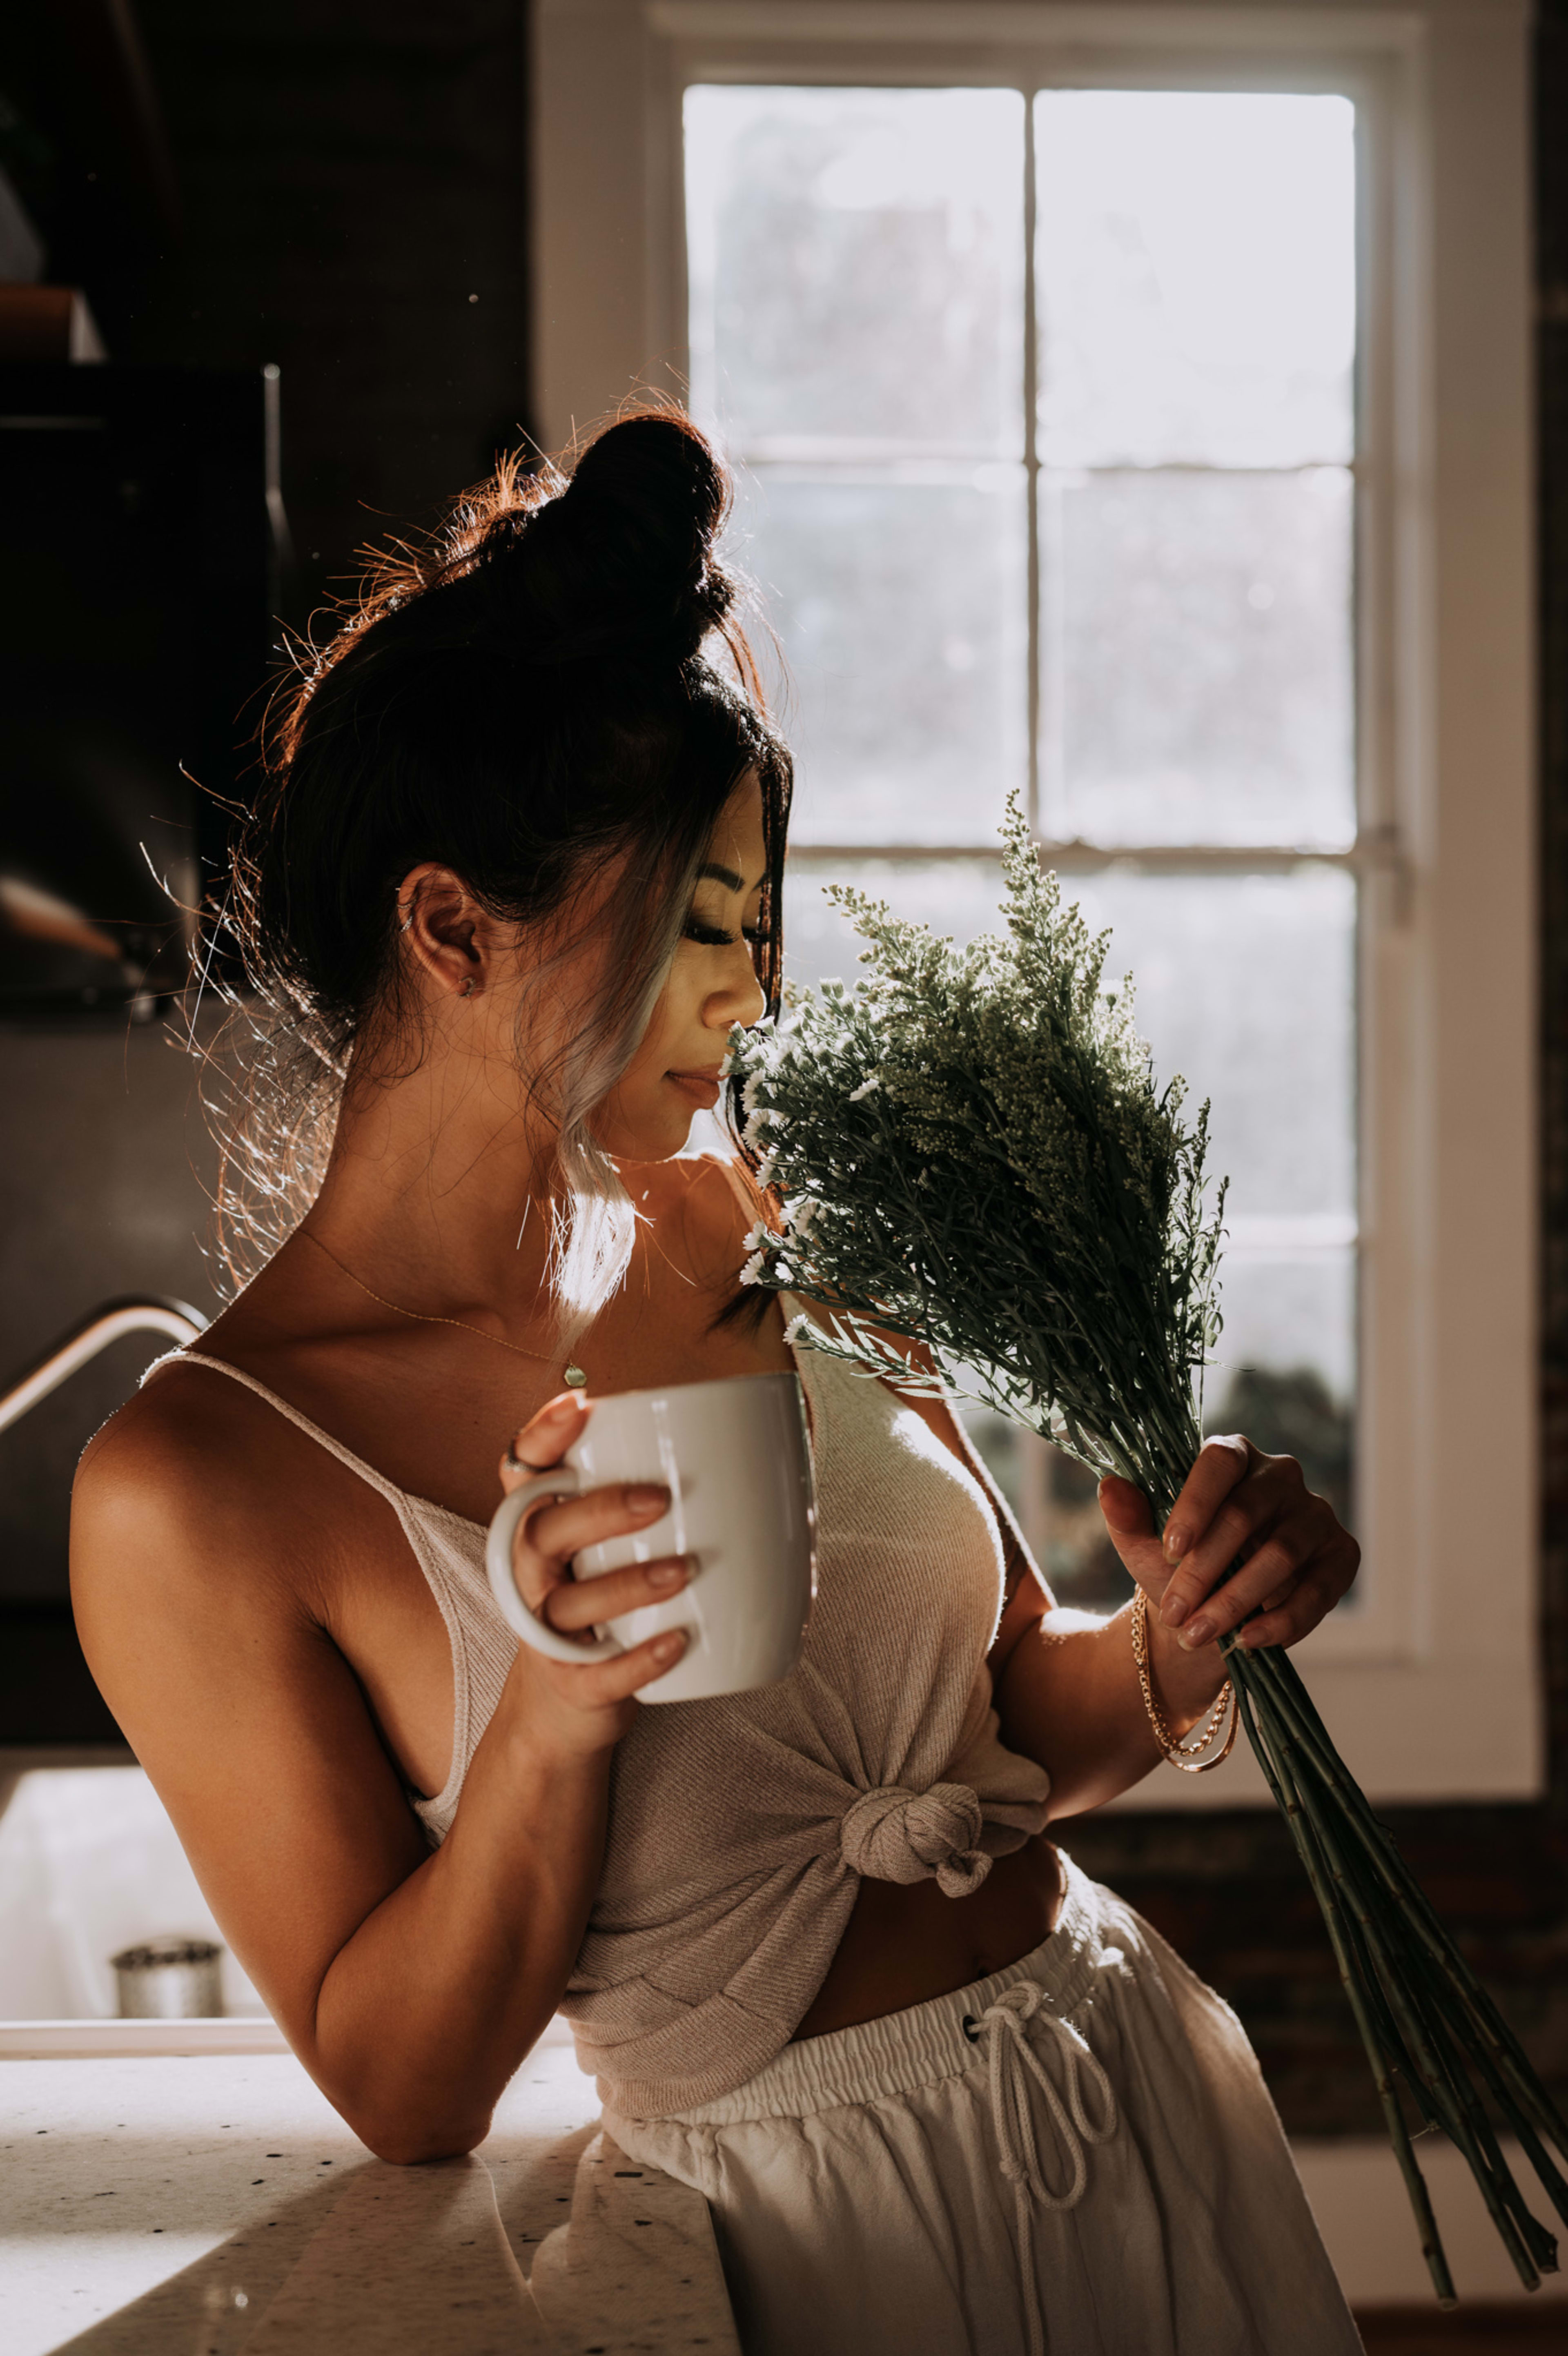 Un shooting photo mettant en scène une femme tenant une tasse de café et des fleurs.